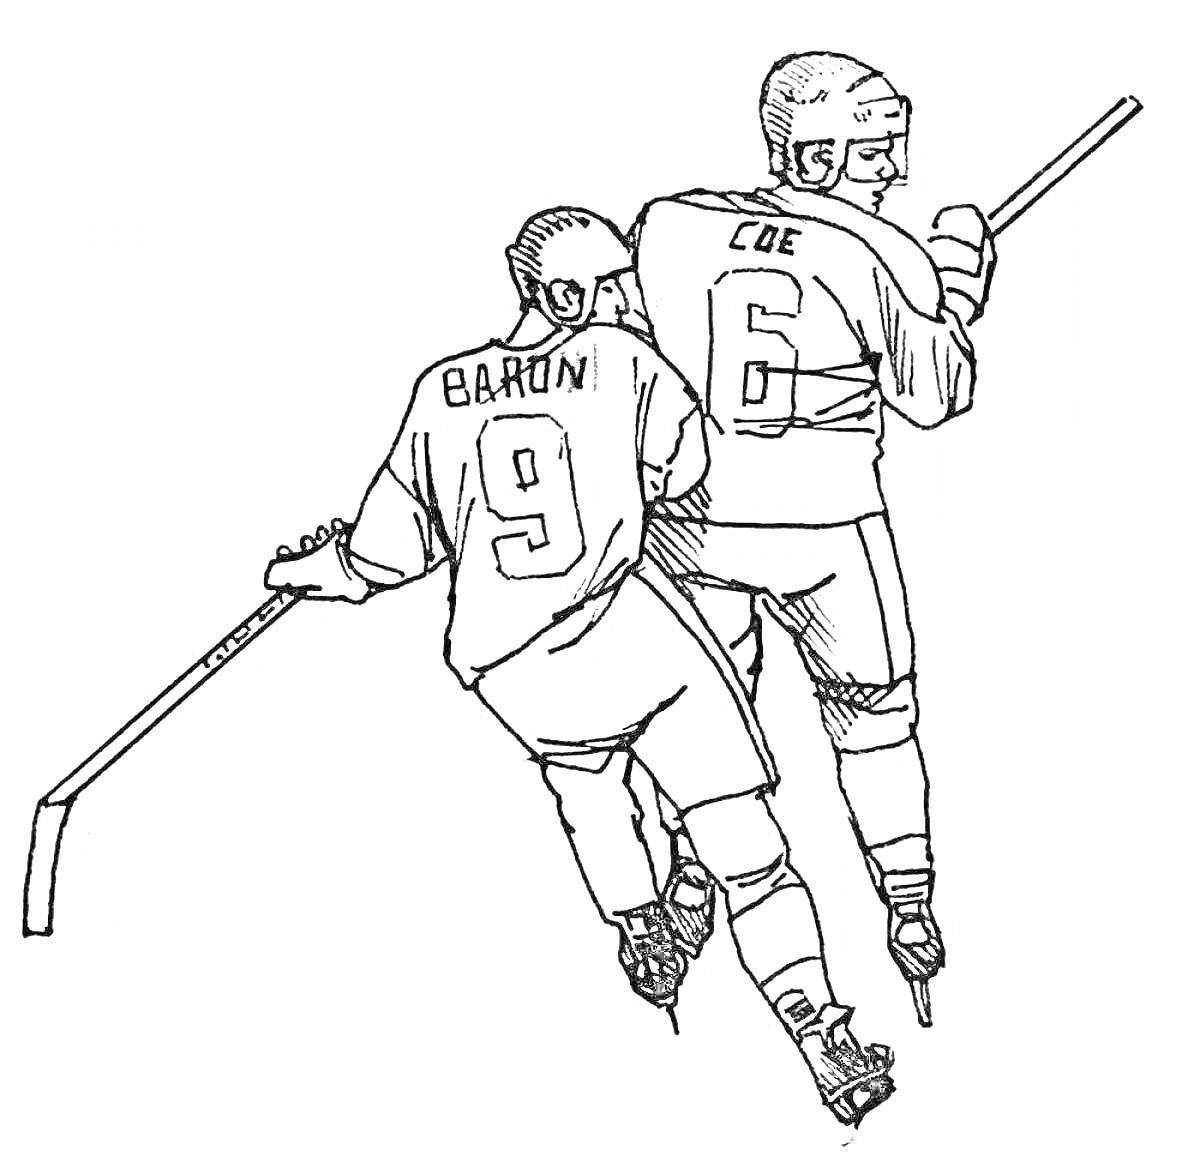 Раскраска Два хоккеиста в защитной экипировке, держащие клюшки, играют в хоккей. Номера и фамилии игроков на форме: 9 - Baron и 6 - Coe.